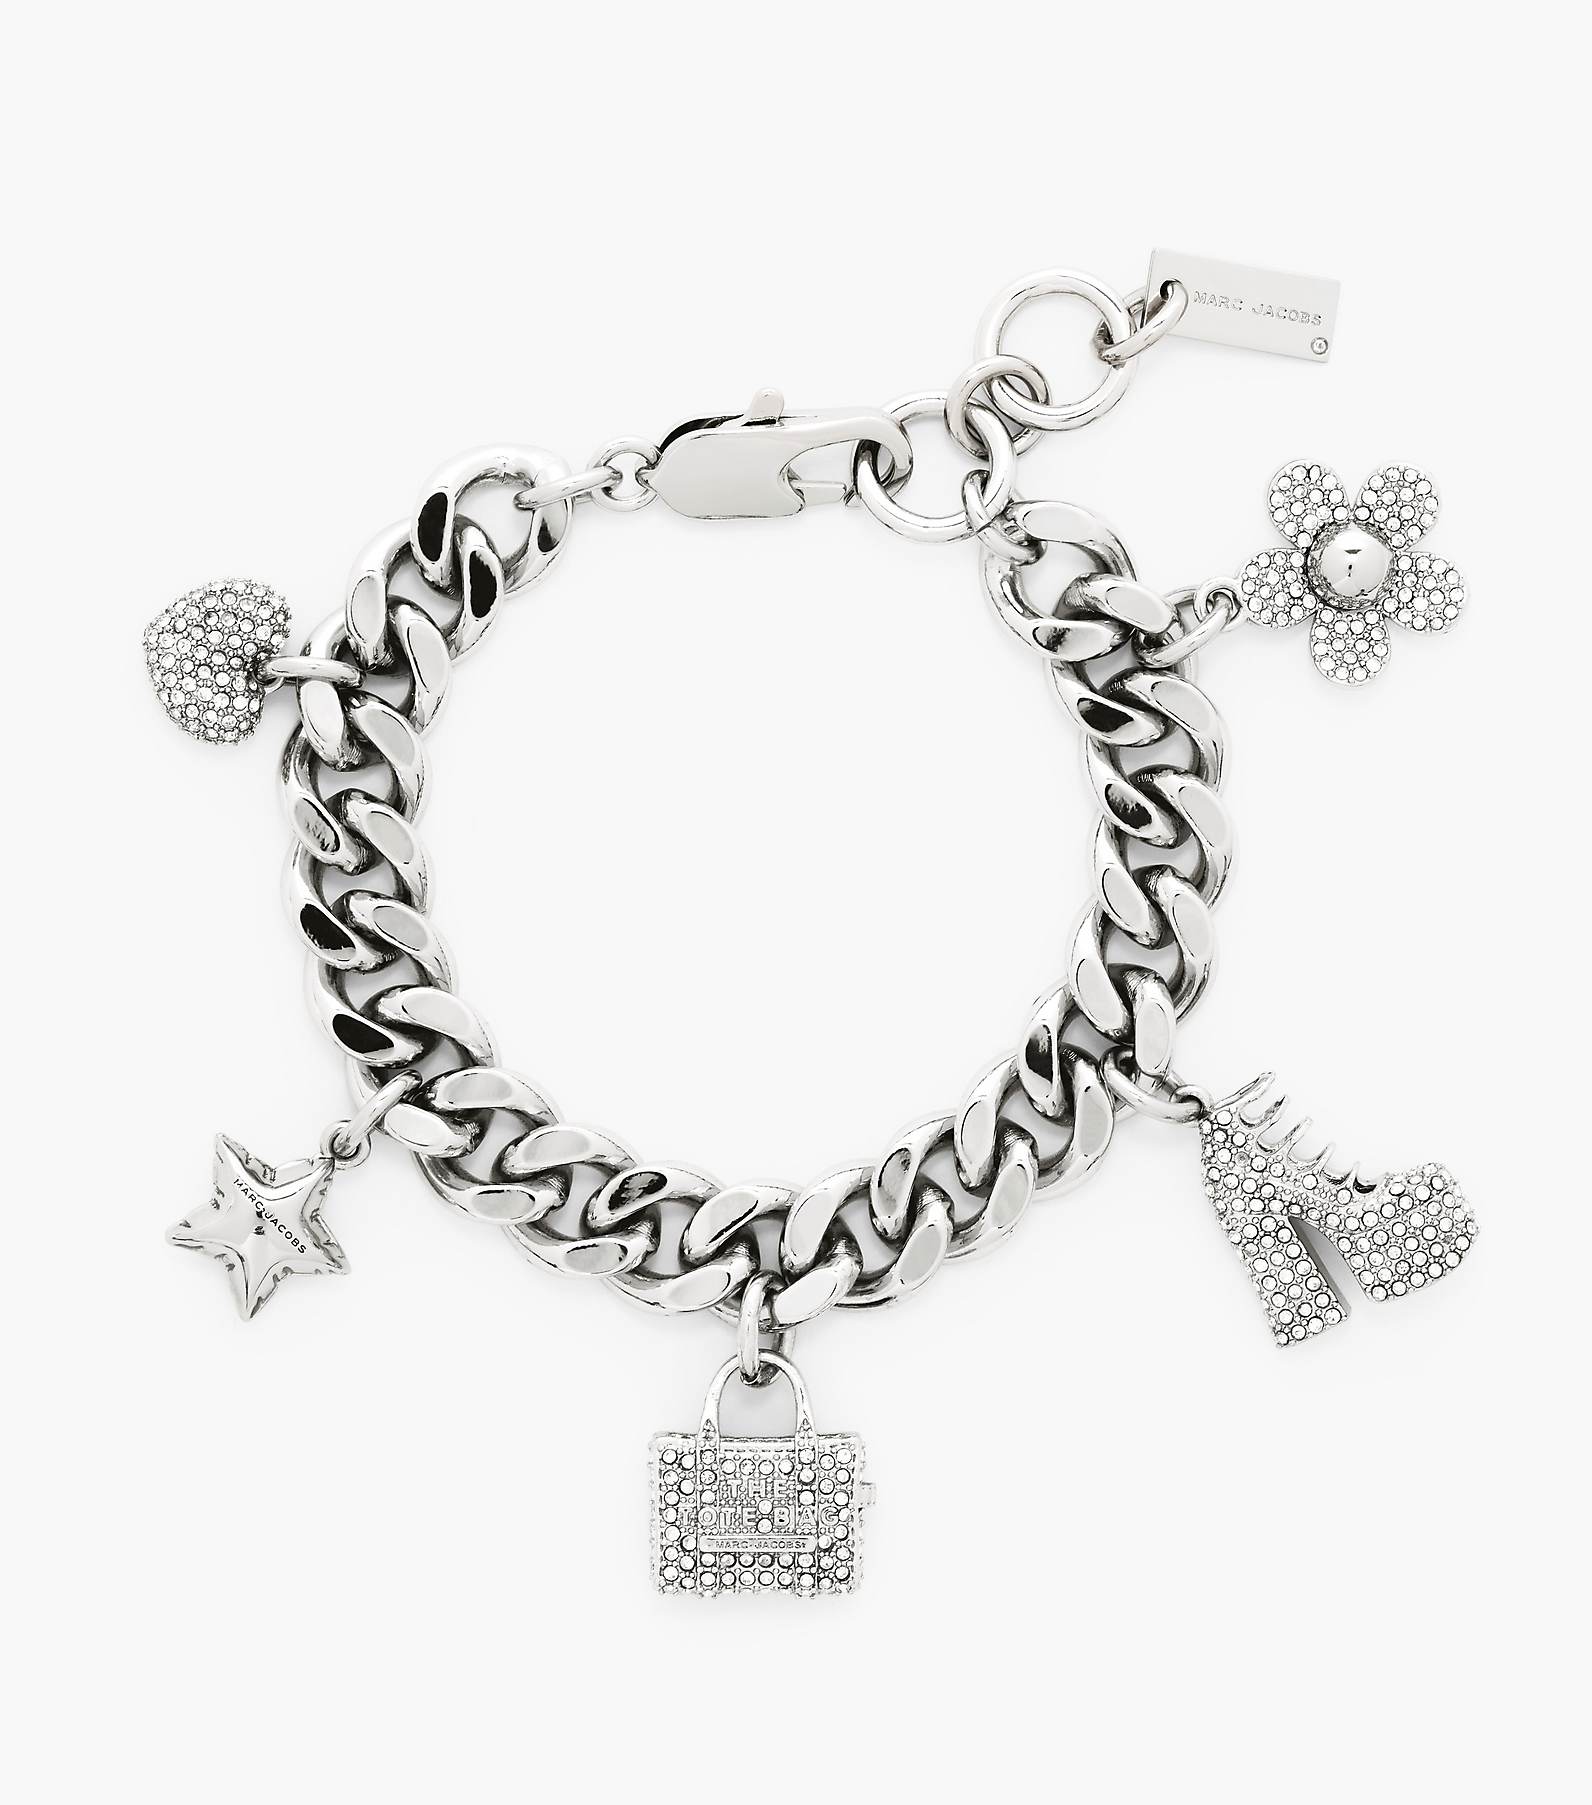 The Pave Mini Icon Charm Bracelet, Marc Jacobs